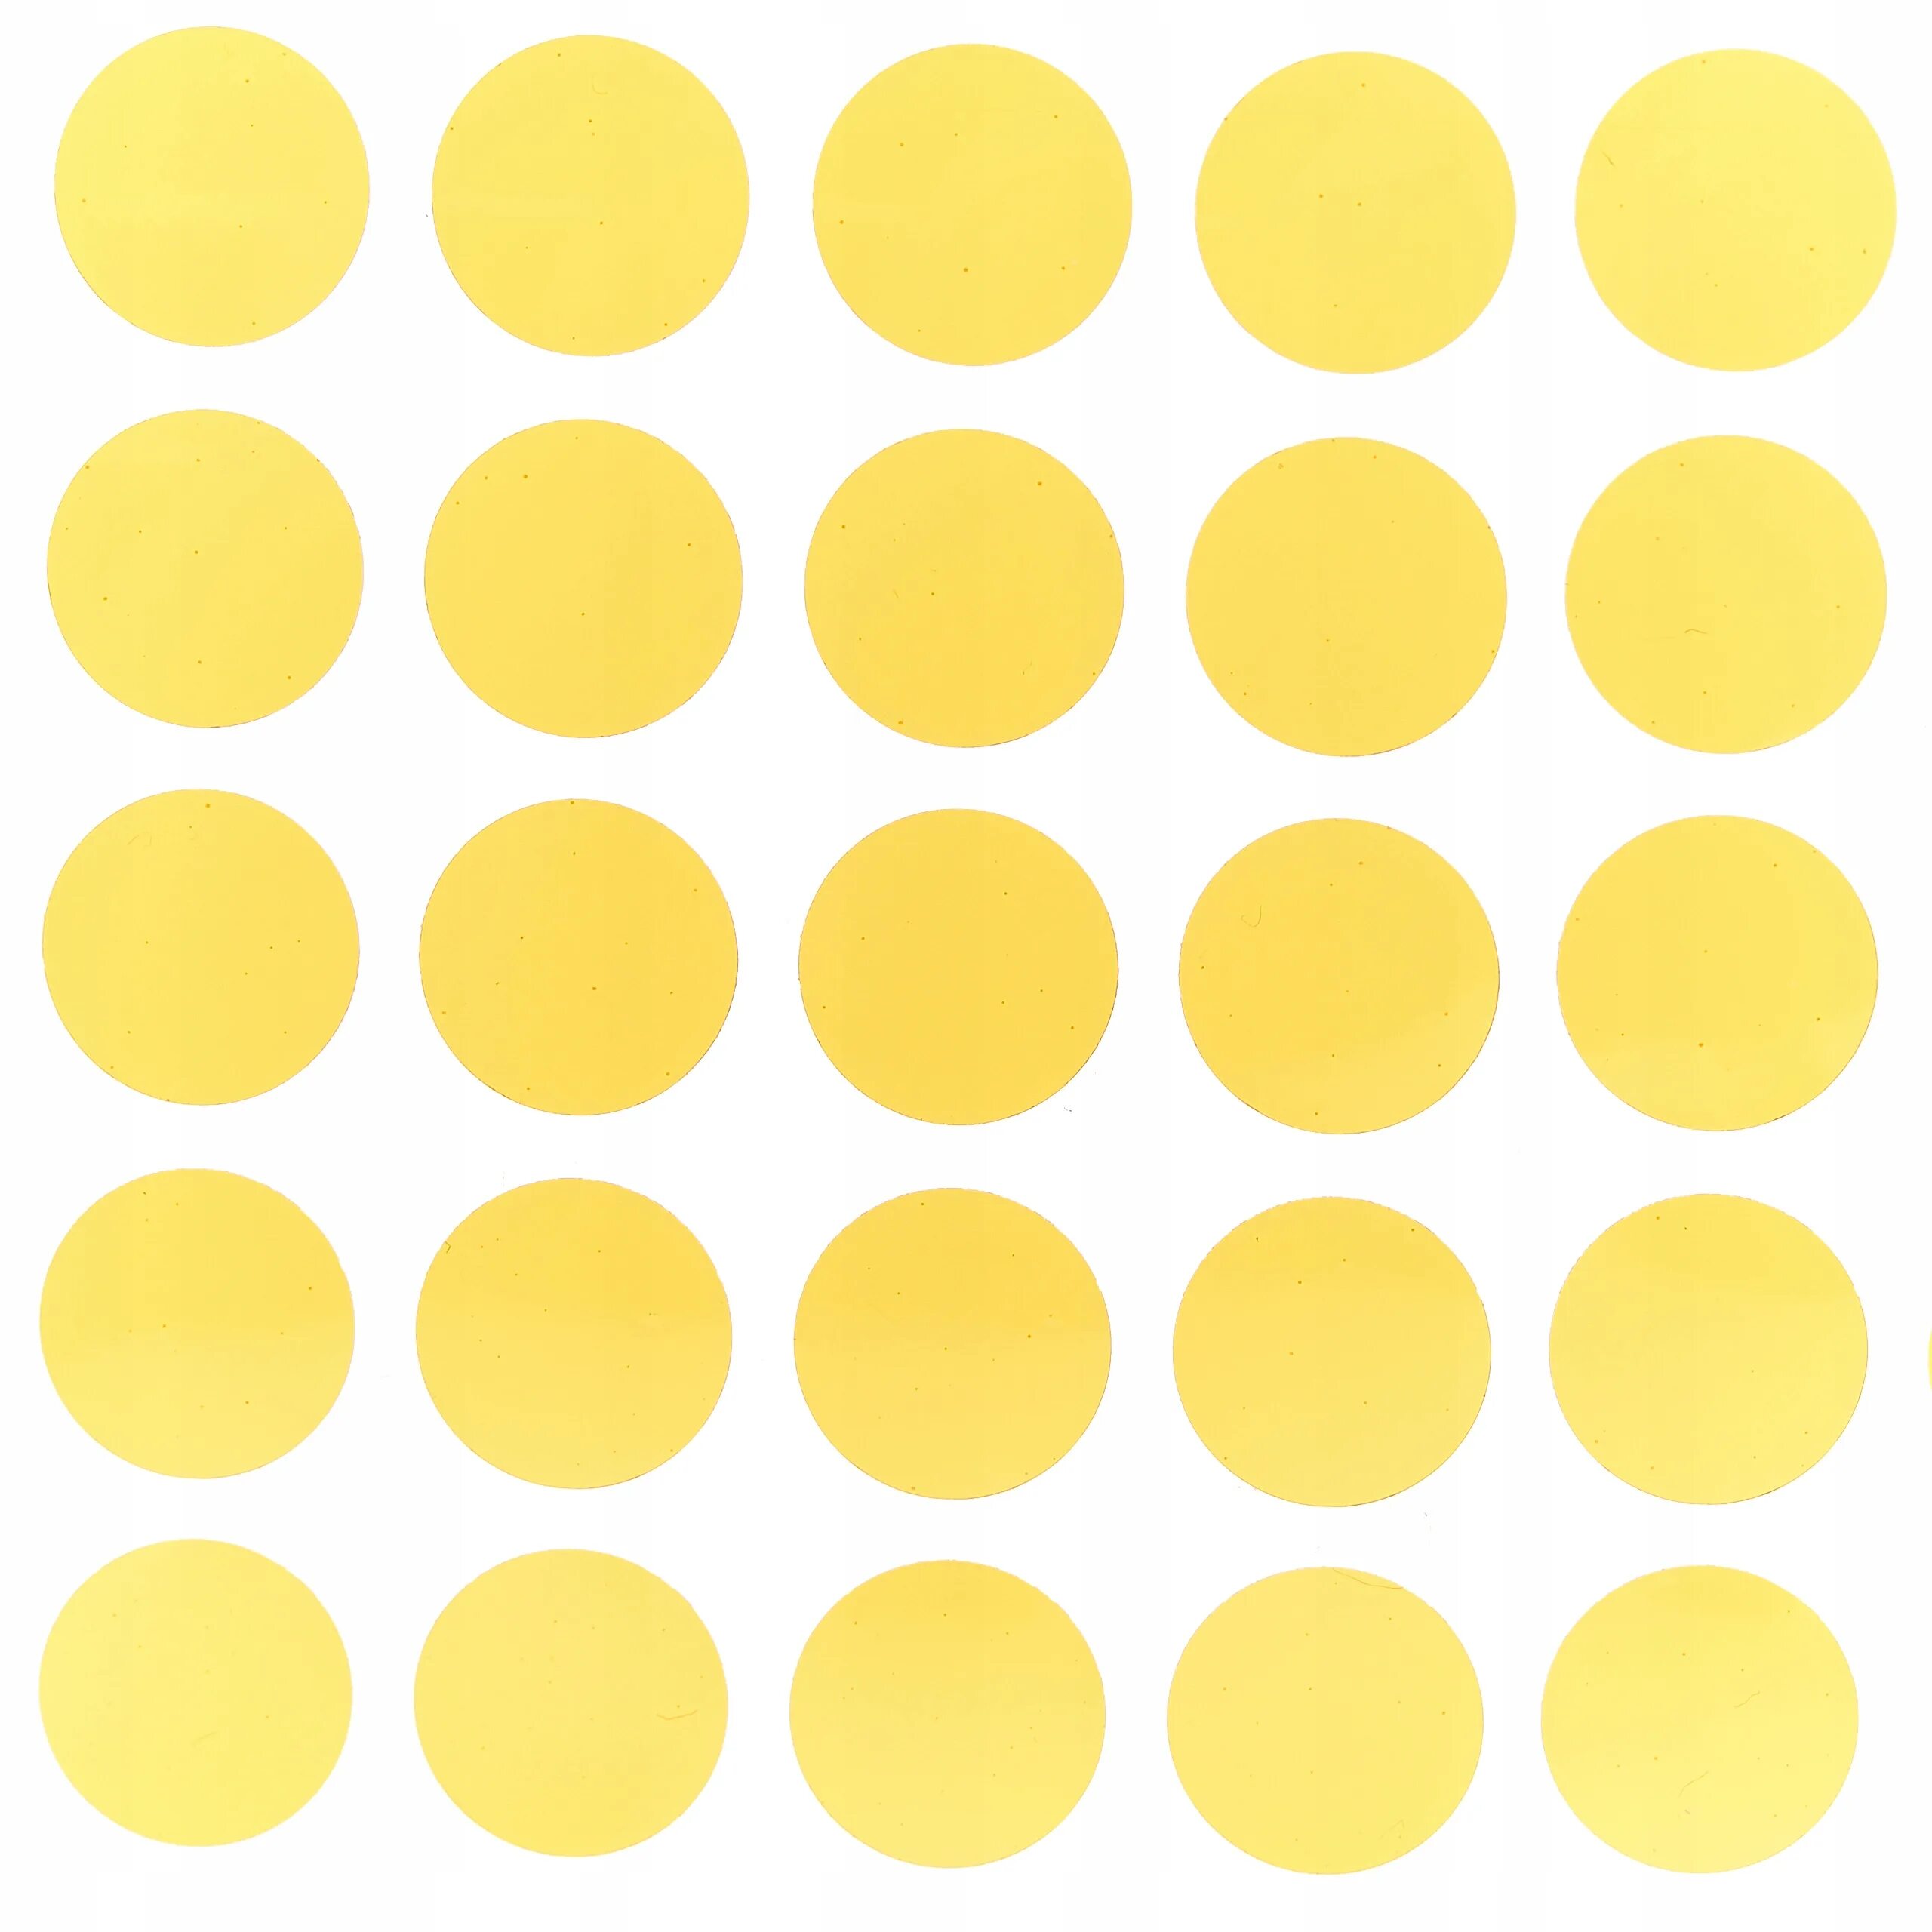 Много маленьких кружков. Желтый круг. Много кругов. Маленькие кружочки. Много кружочков.